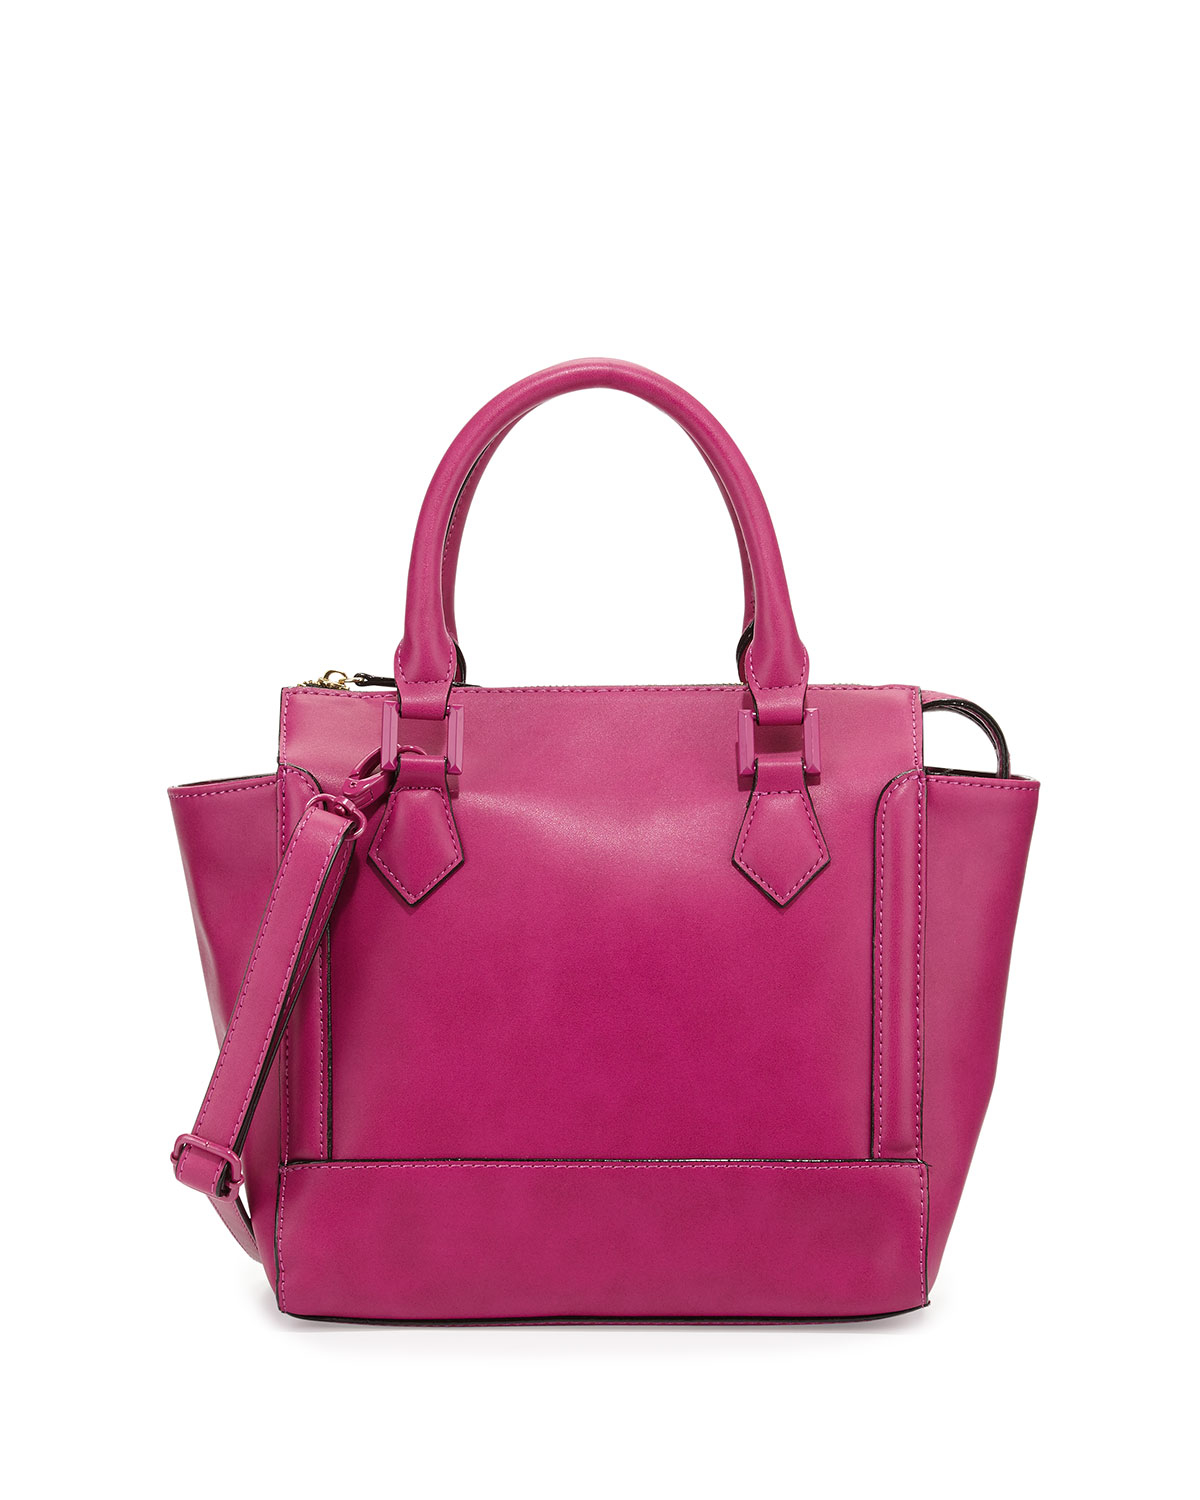 Lyst - Neiman Marcus Convertible Satchel Bag in Purple